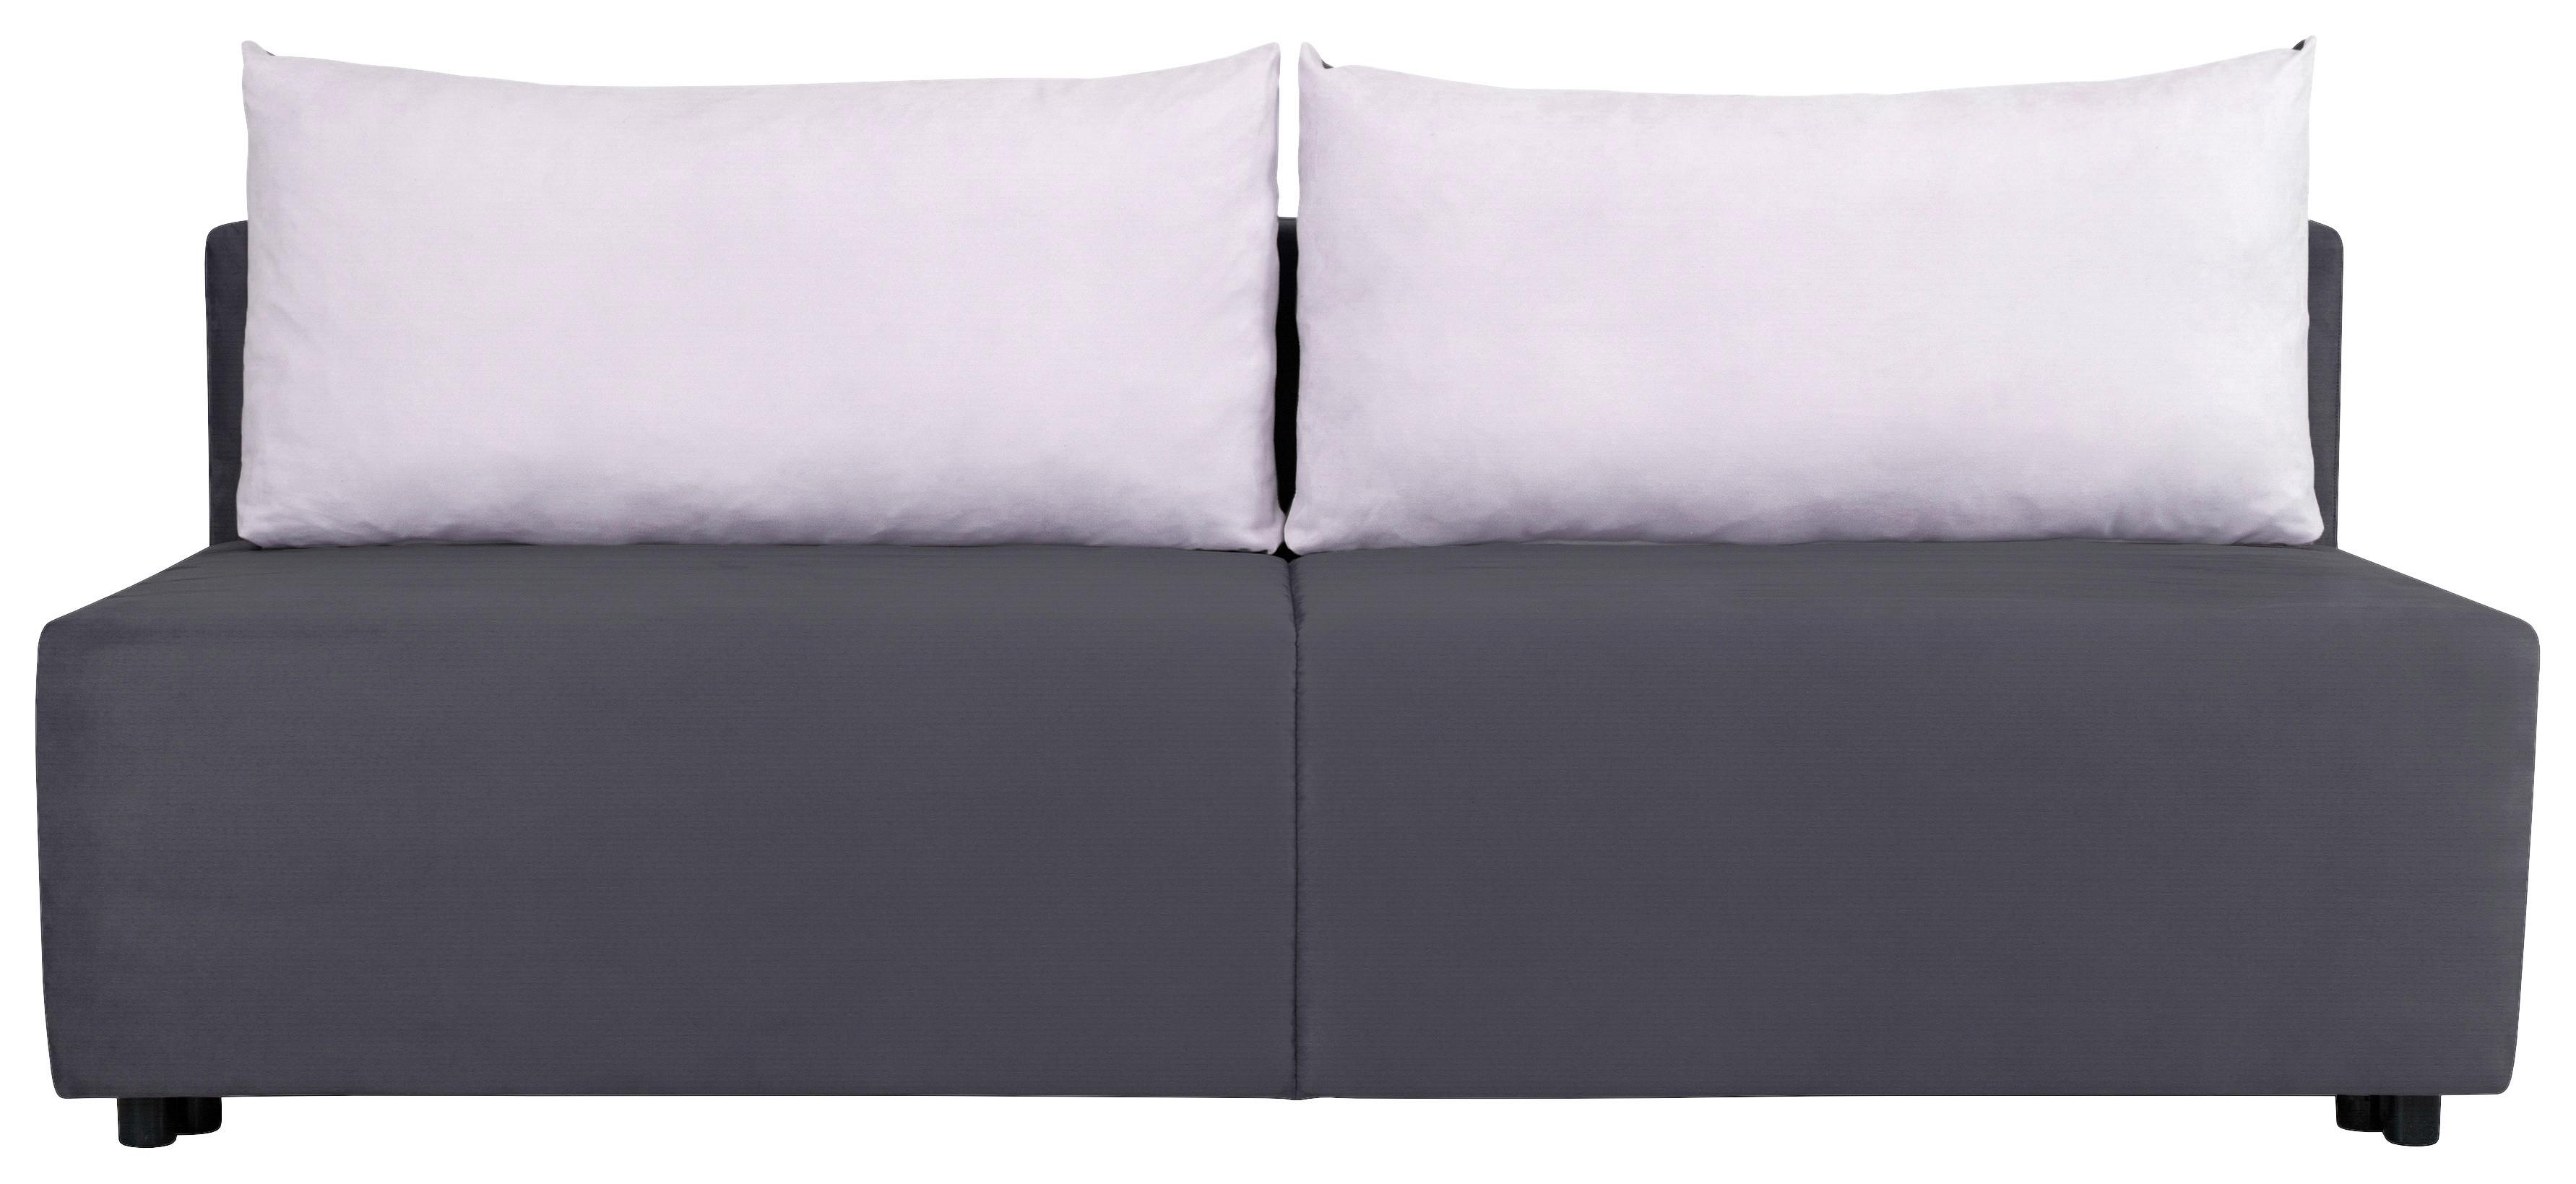 Sofa Basic - Modern (89/74/201cm) - Based